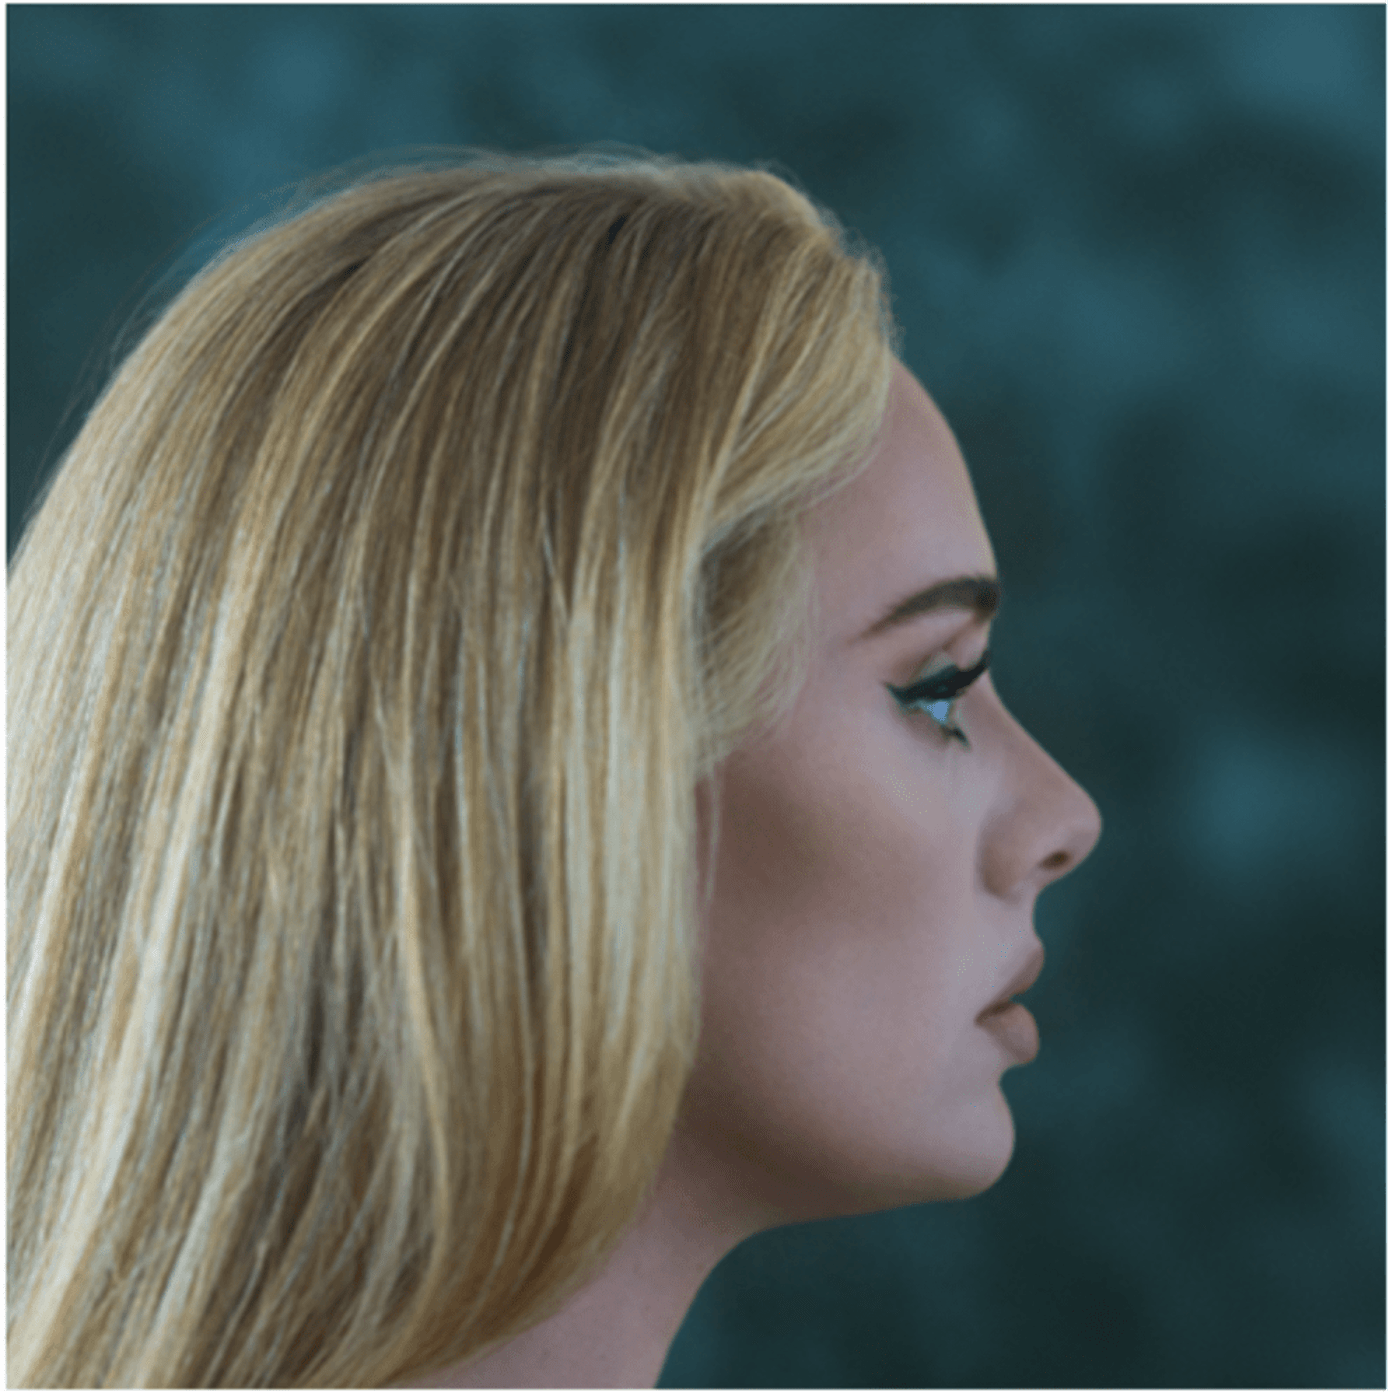 Cover art for Adele's new album "30"